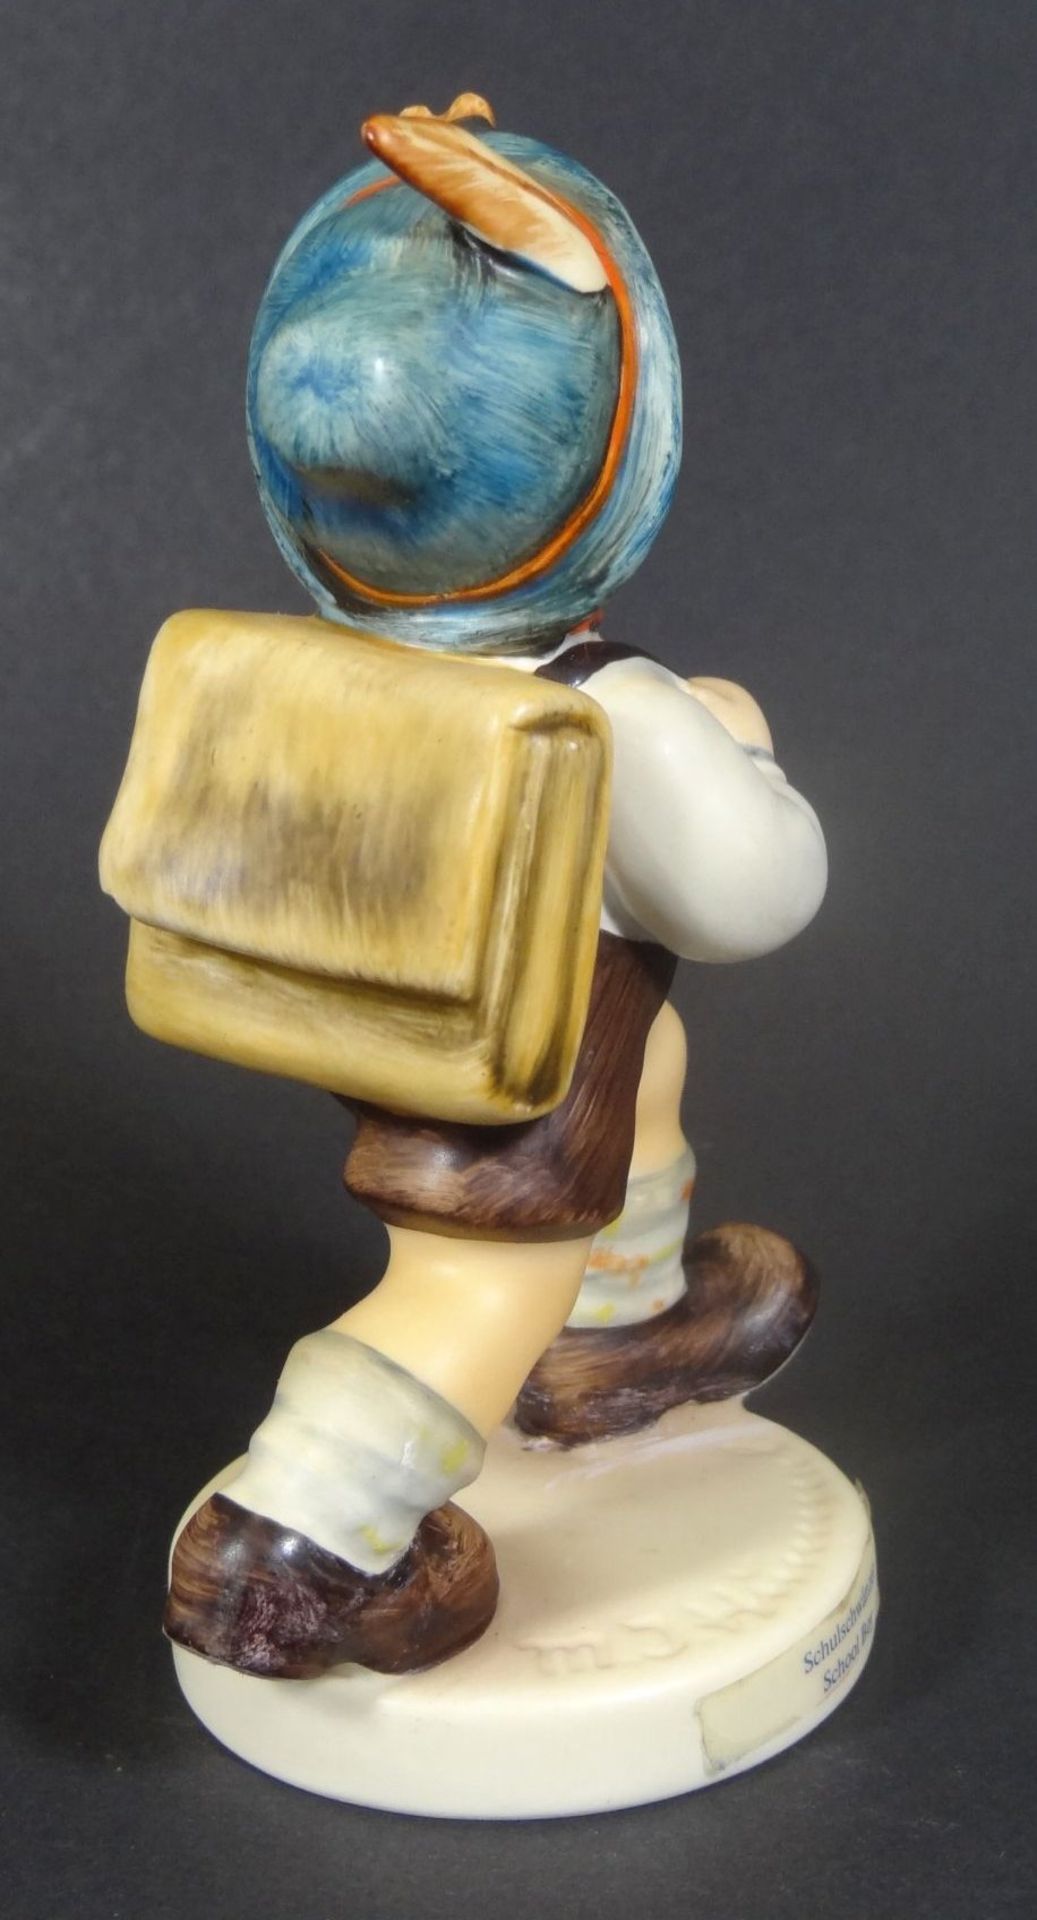 Hummelfigur "school boy" Goebel, H-11,5 cm, kaum sichtbare Klebestelle am Fuss - Bild 4 aus 8